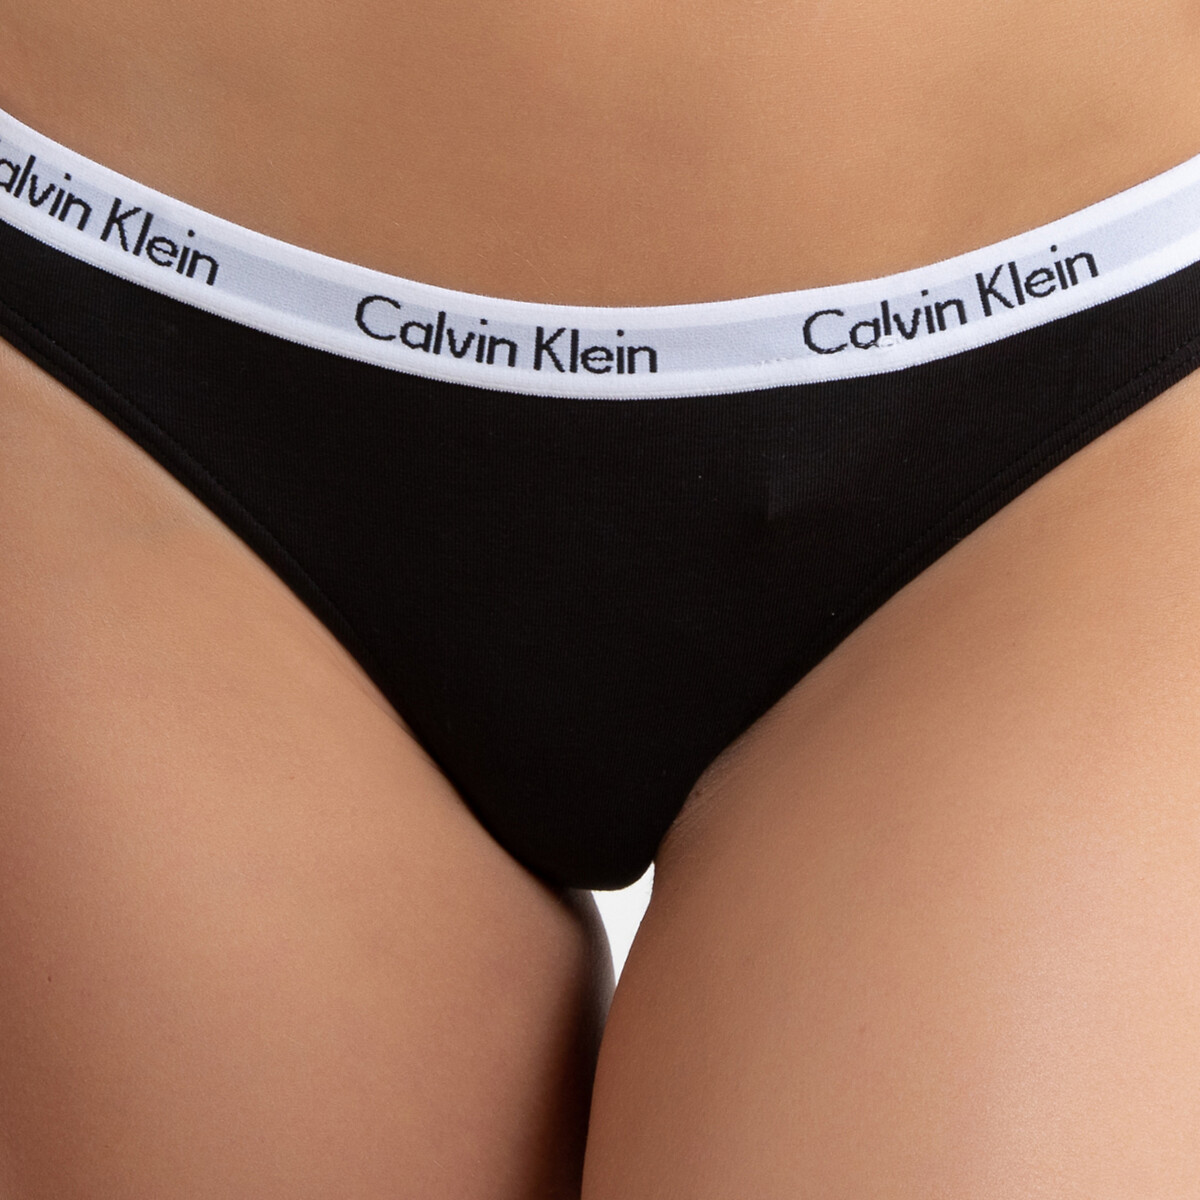 Pack of 3 tangas in cotton mix, black, Calvin Klein Underwear